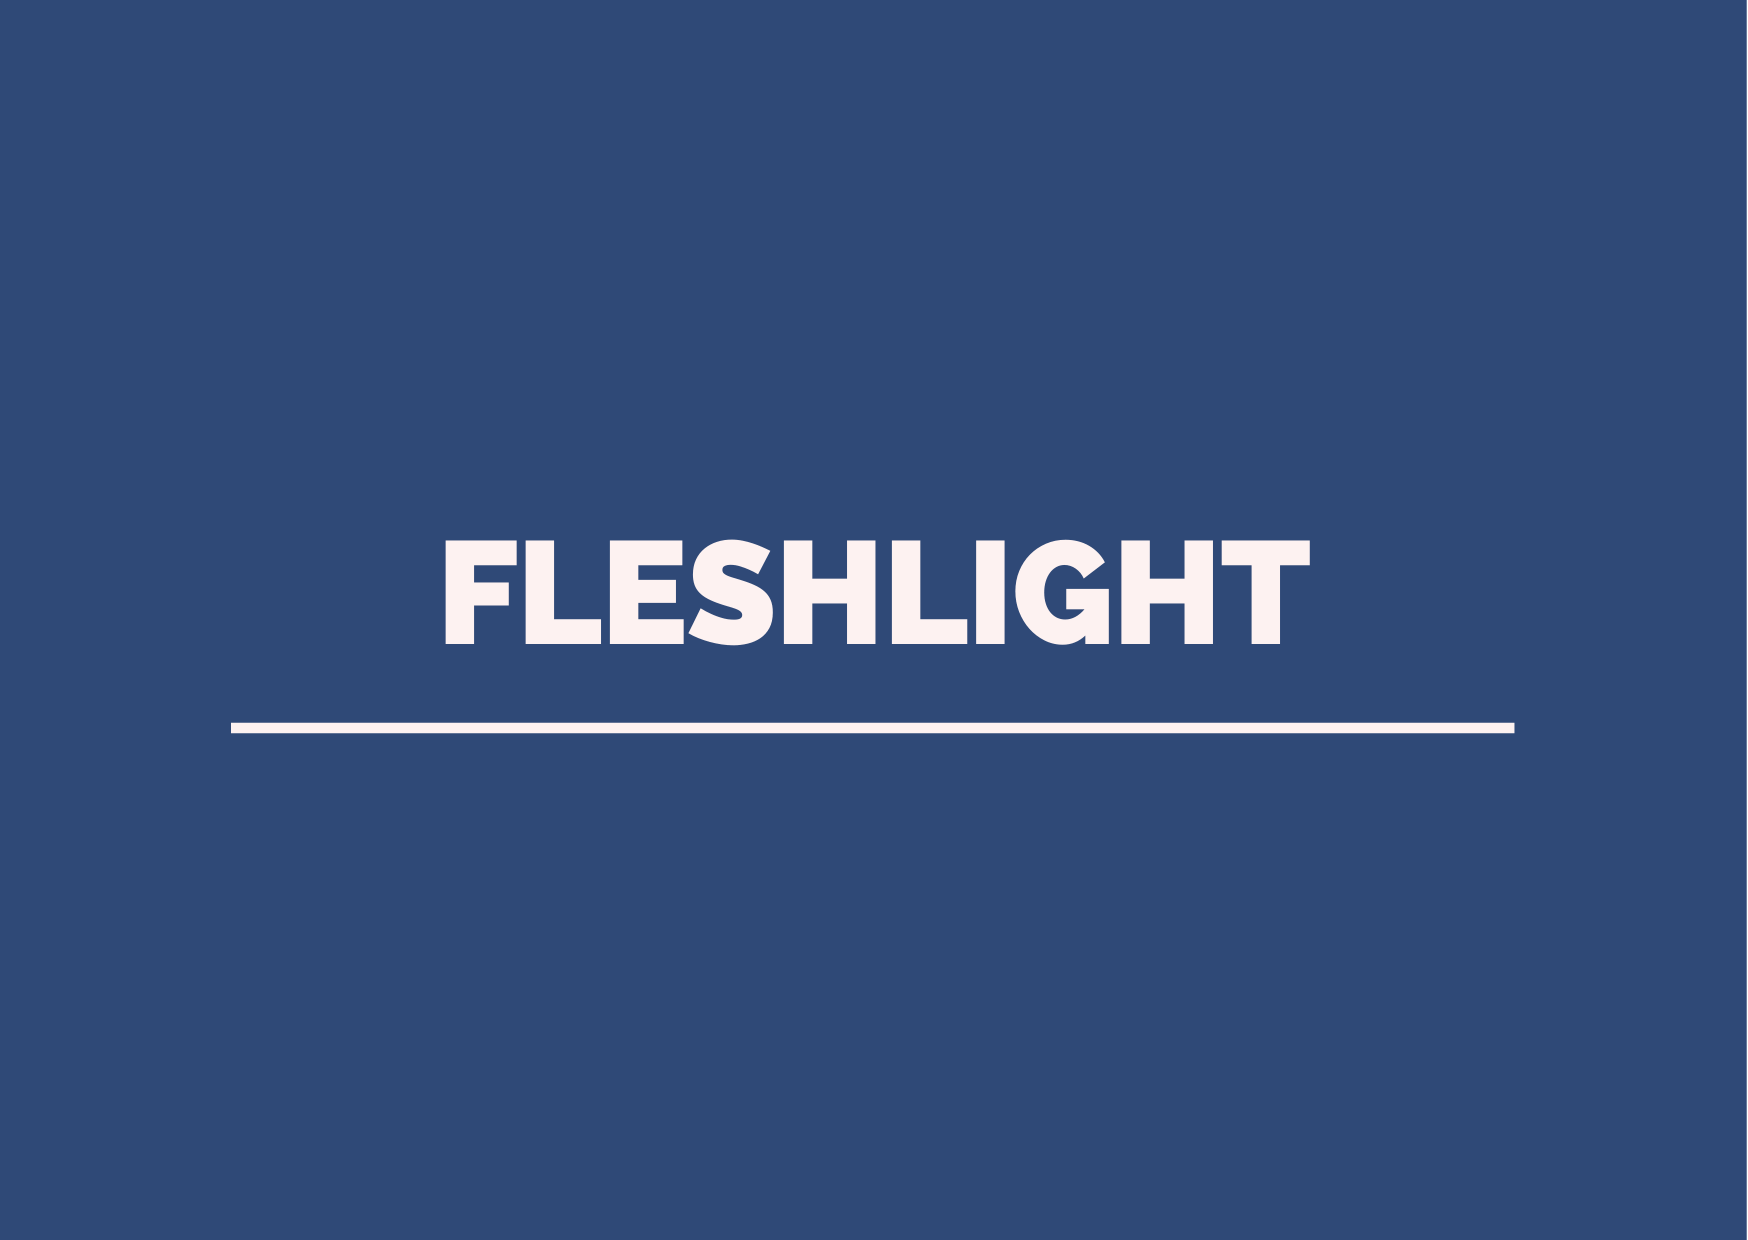 fleshlight text